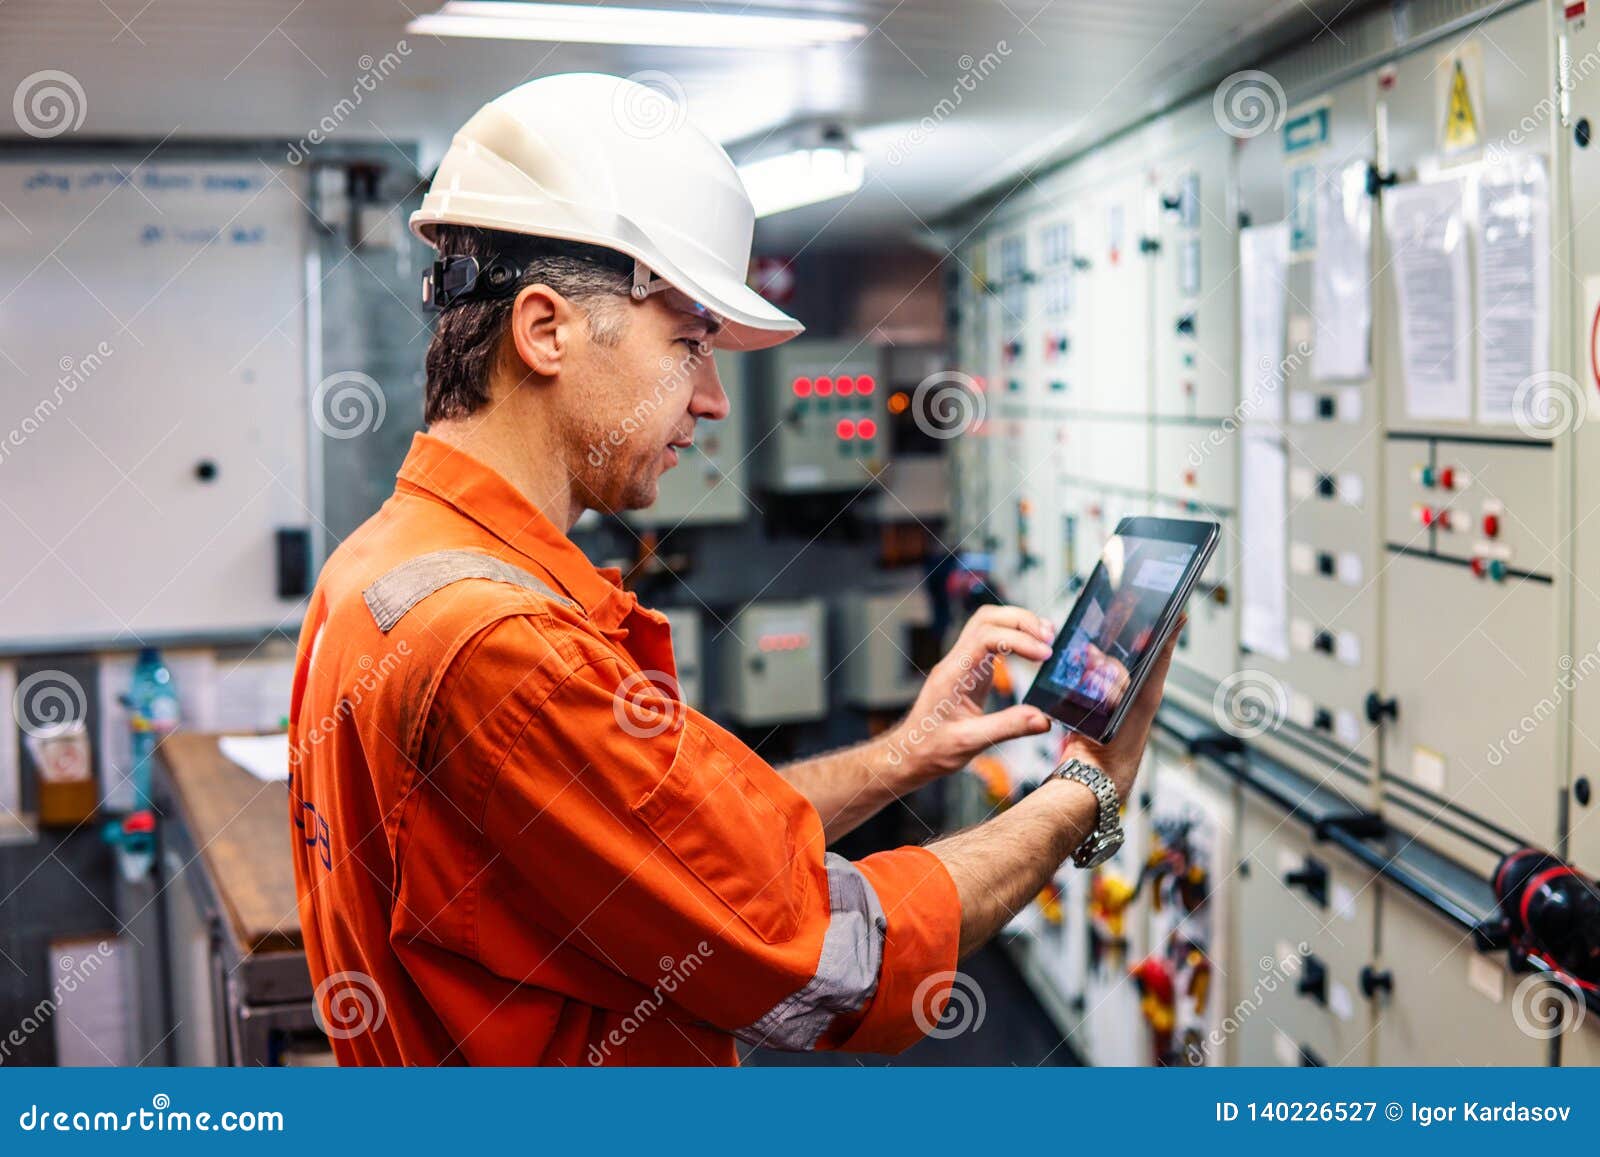 marine chief engineer watching digital tablet in engine control room